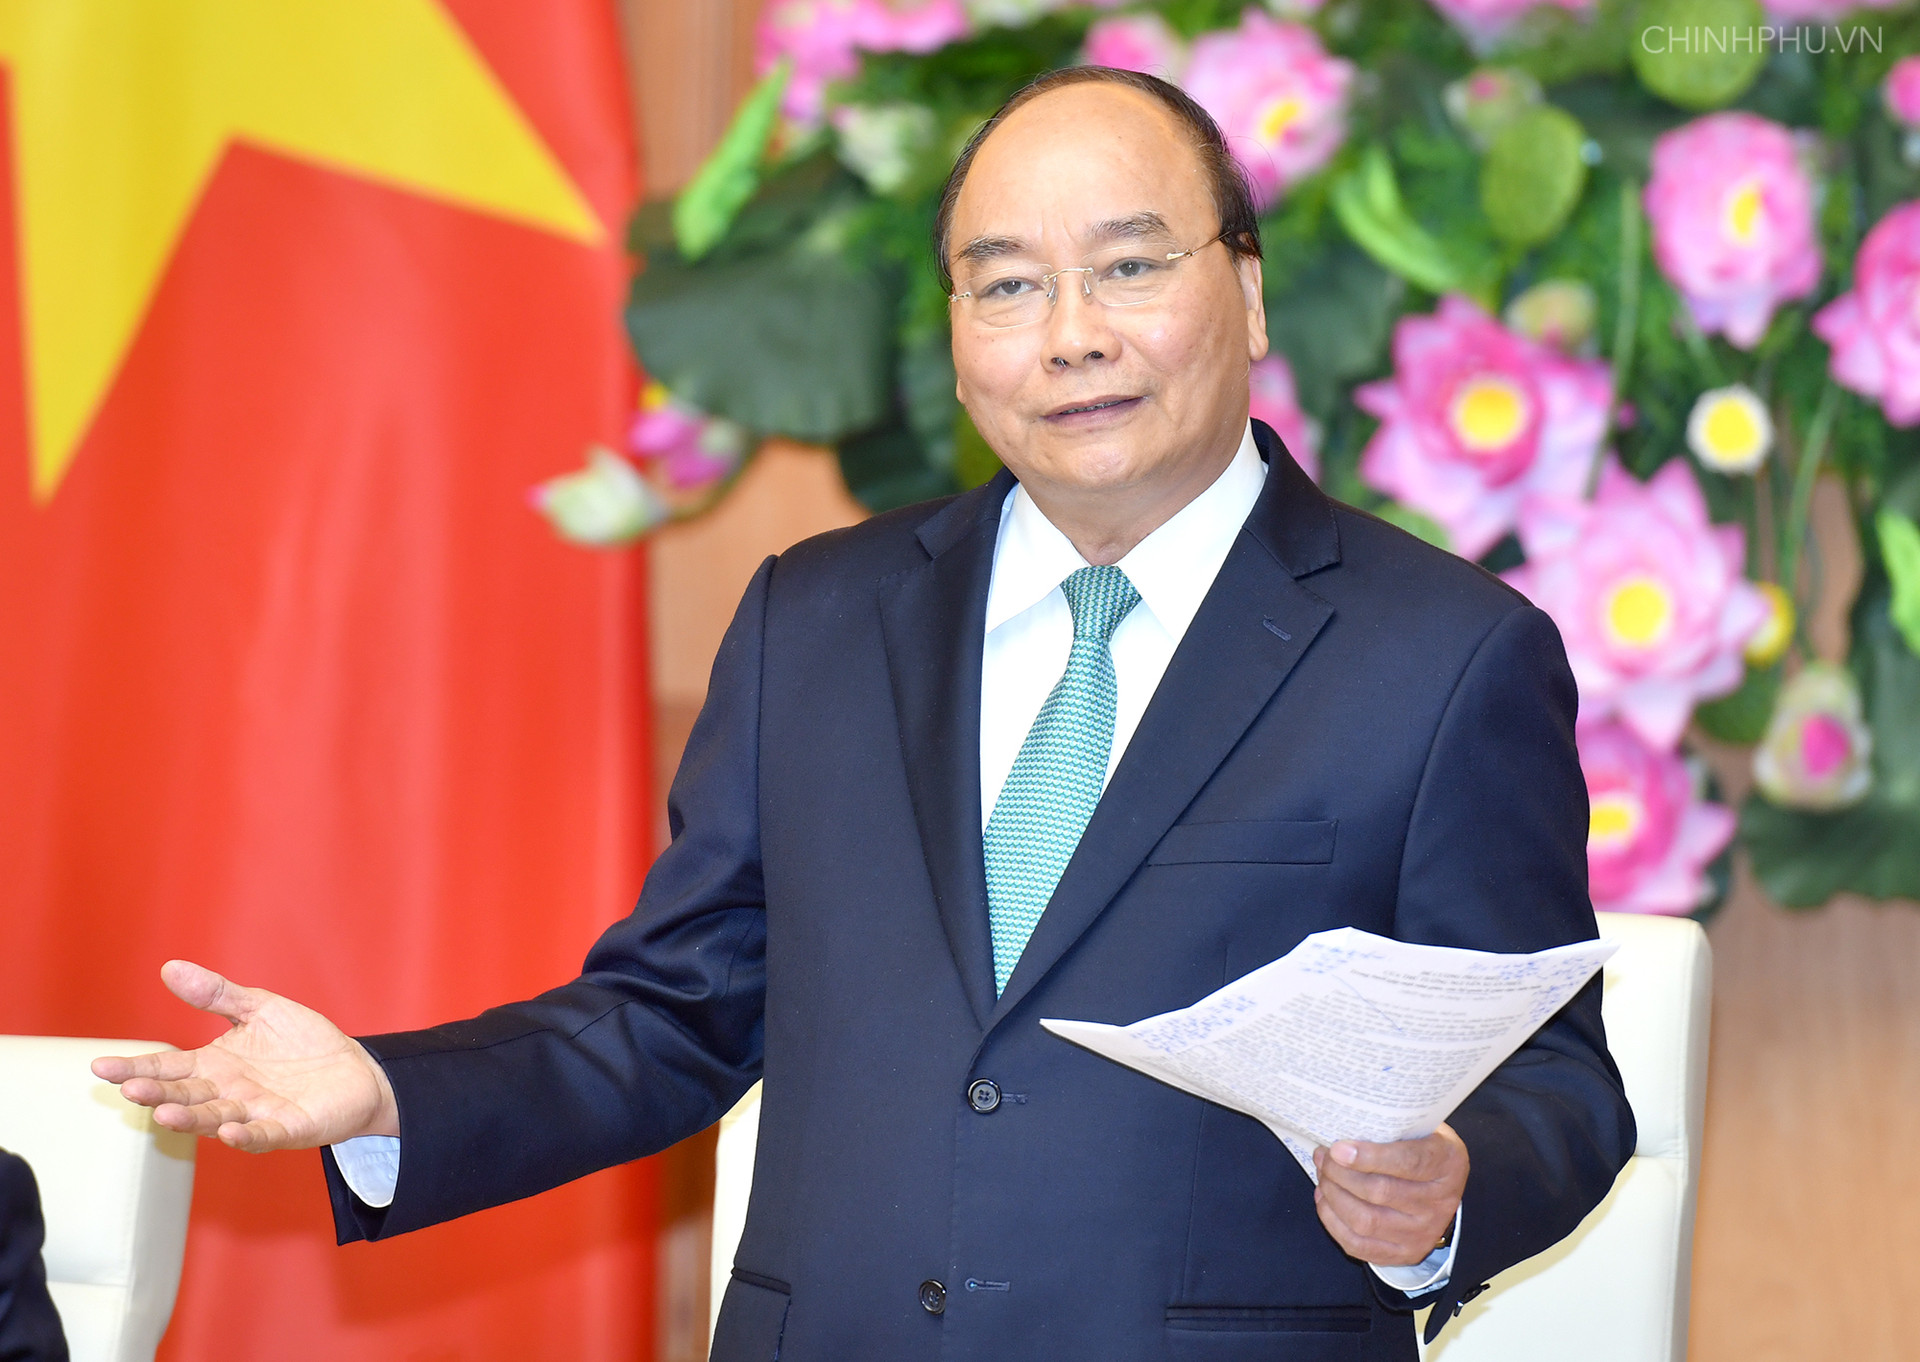 Thủ tướng Nguyễn Xuân Phúc gặp mặt các nhà giáo, cán bộ quản lý giáo dục tiêu biểu